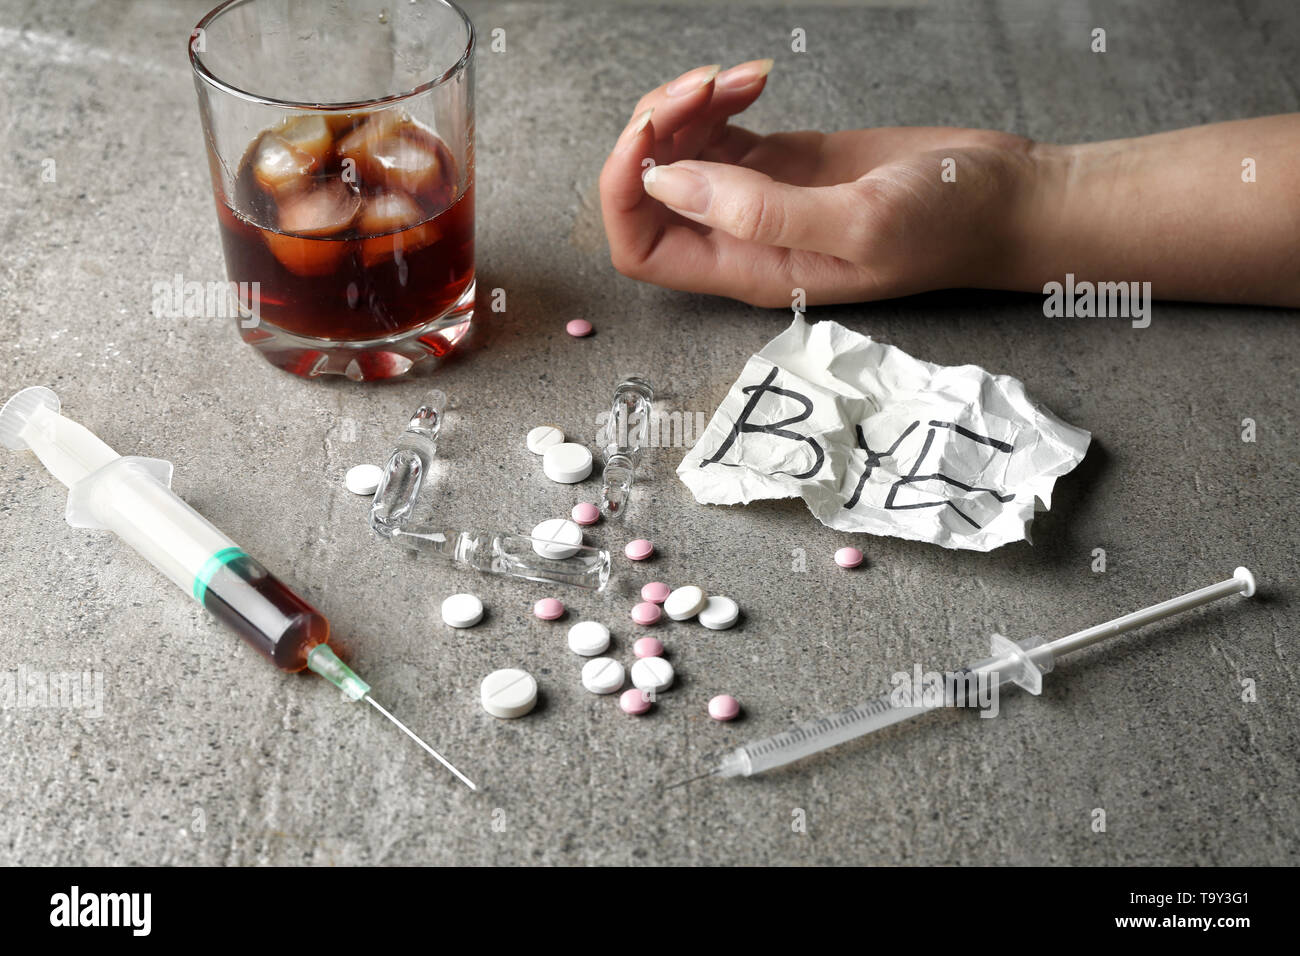 La femelle, seringue, pilules et verre d'alcool sur le tableau gris. Notion  de suicide Photo Stock - Alamy